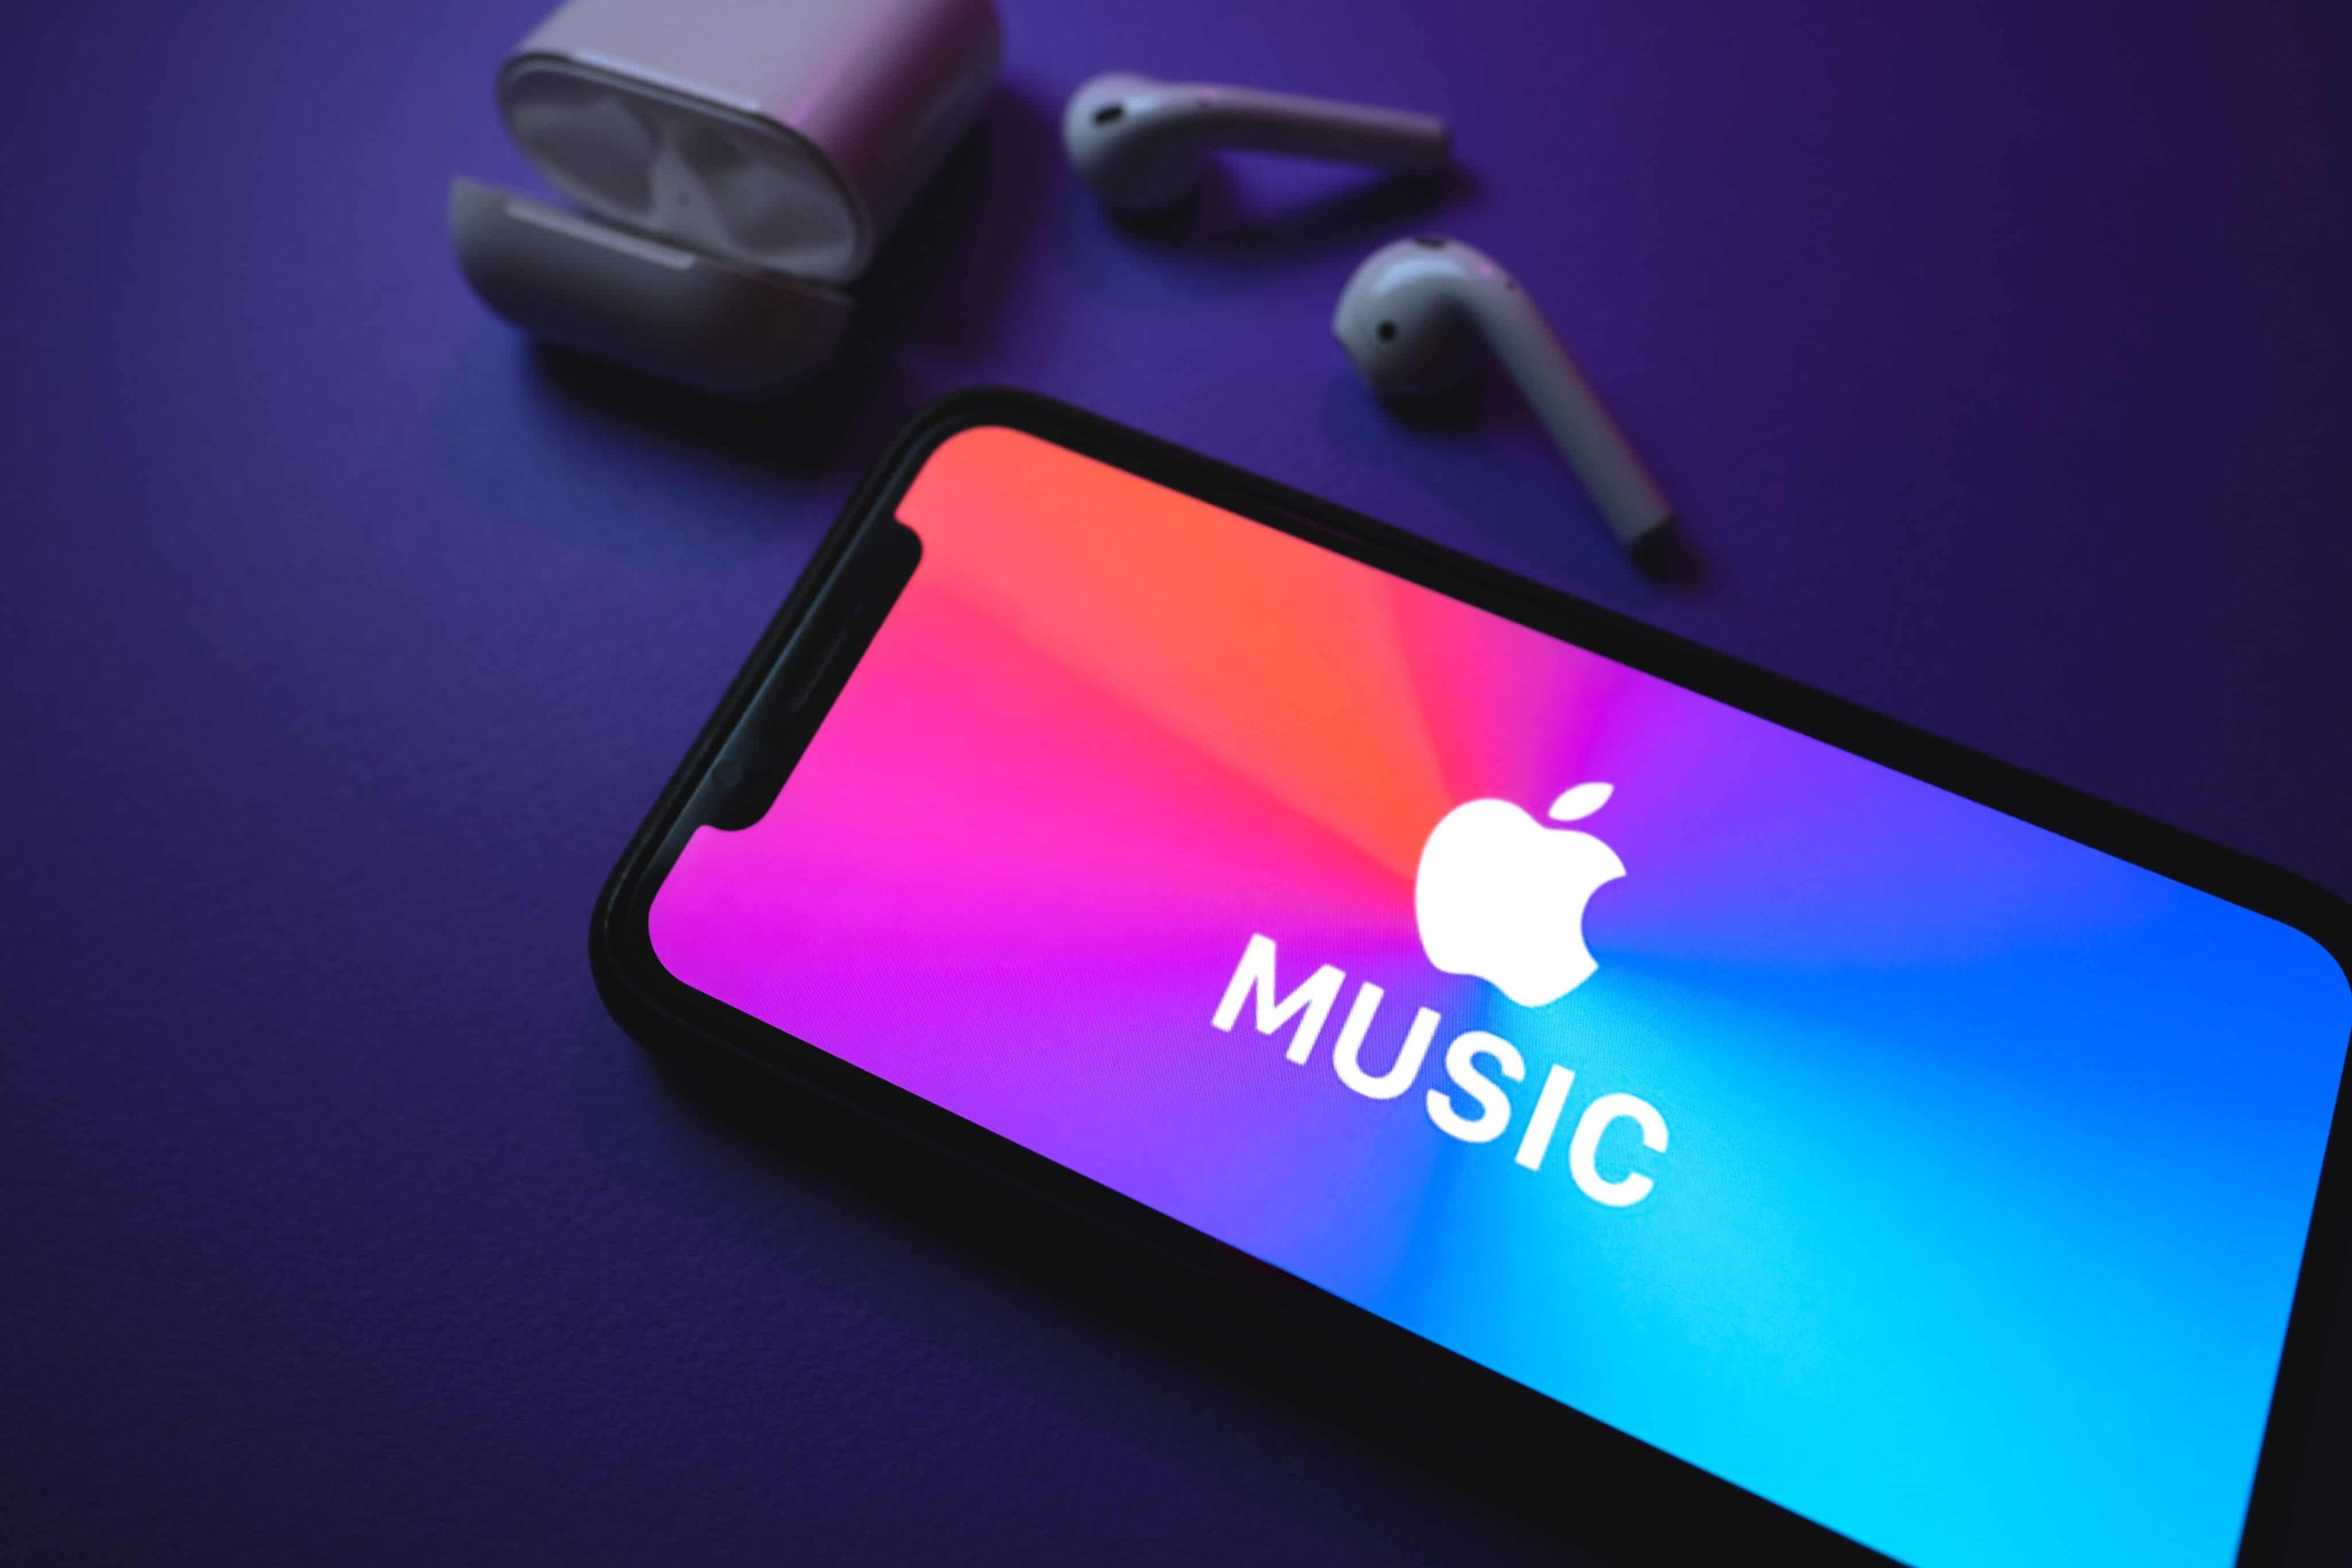 كيف يمكن إلغاء اشتراكك في Apple Music على أي جهاز